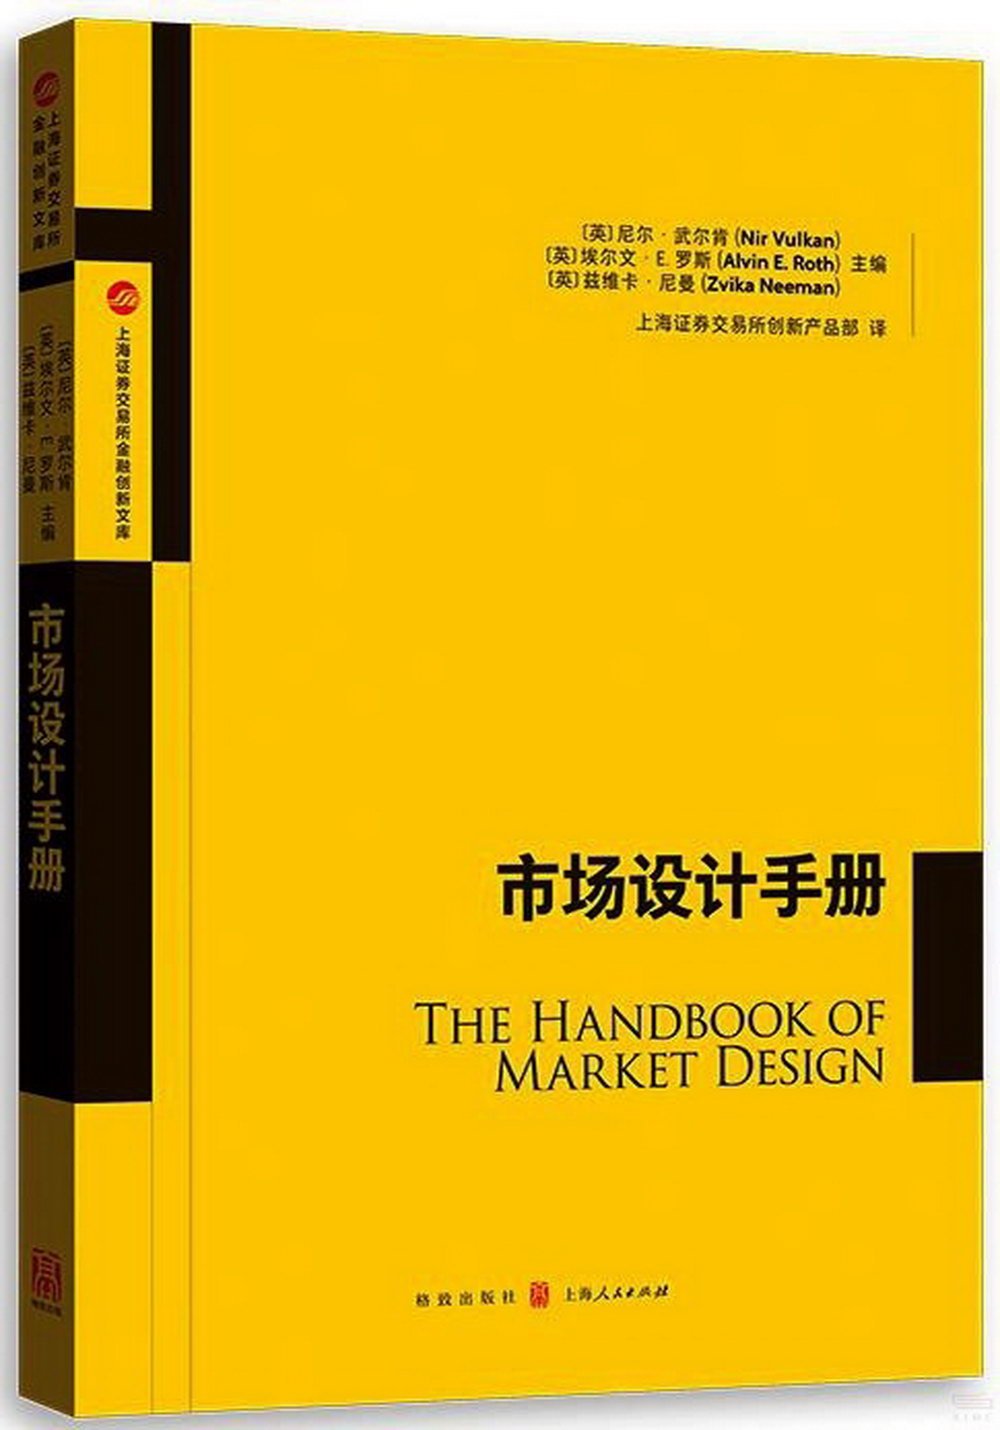 市場設計手冊